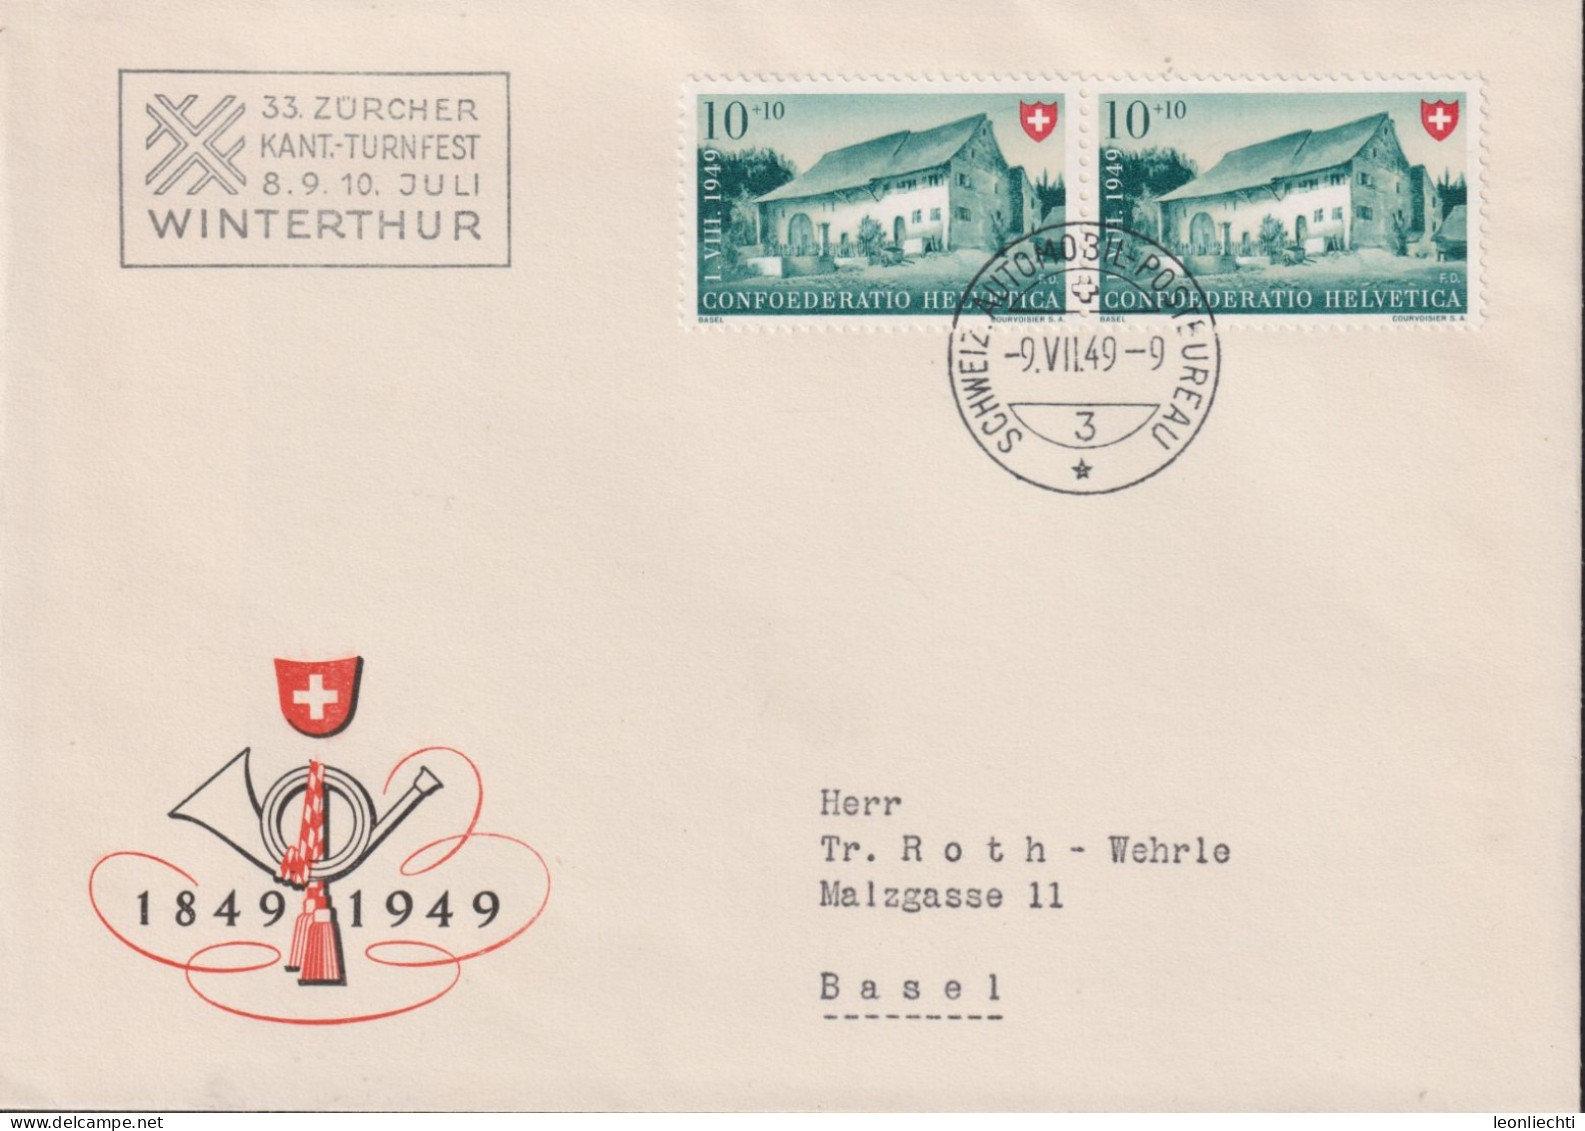 1949 Schweiz Pro Patria, Zum:CH B43, Mi:CH 526, Bauernhaus Im Baselbiet. (33.Zürcher Kant.-Turnfest Winterthur) - Storia Postale